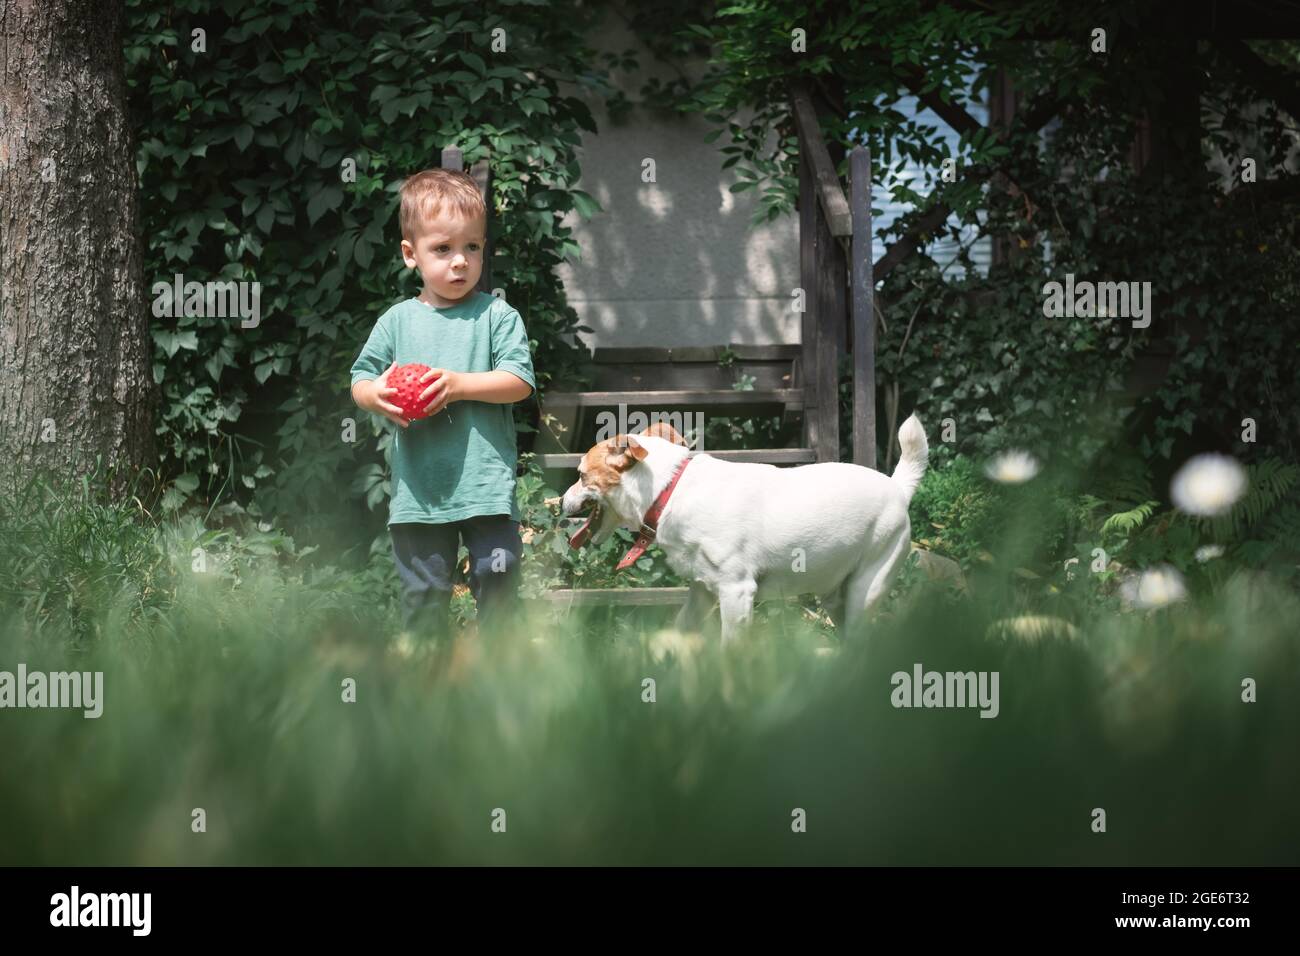 Petit enfant a joué avec le chien blanc chiot race Jack russel terrier dans la cour d'été. Concept d'enfance heureuse Banque D'Images